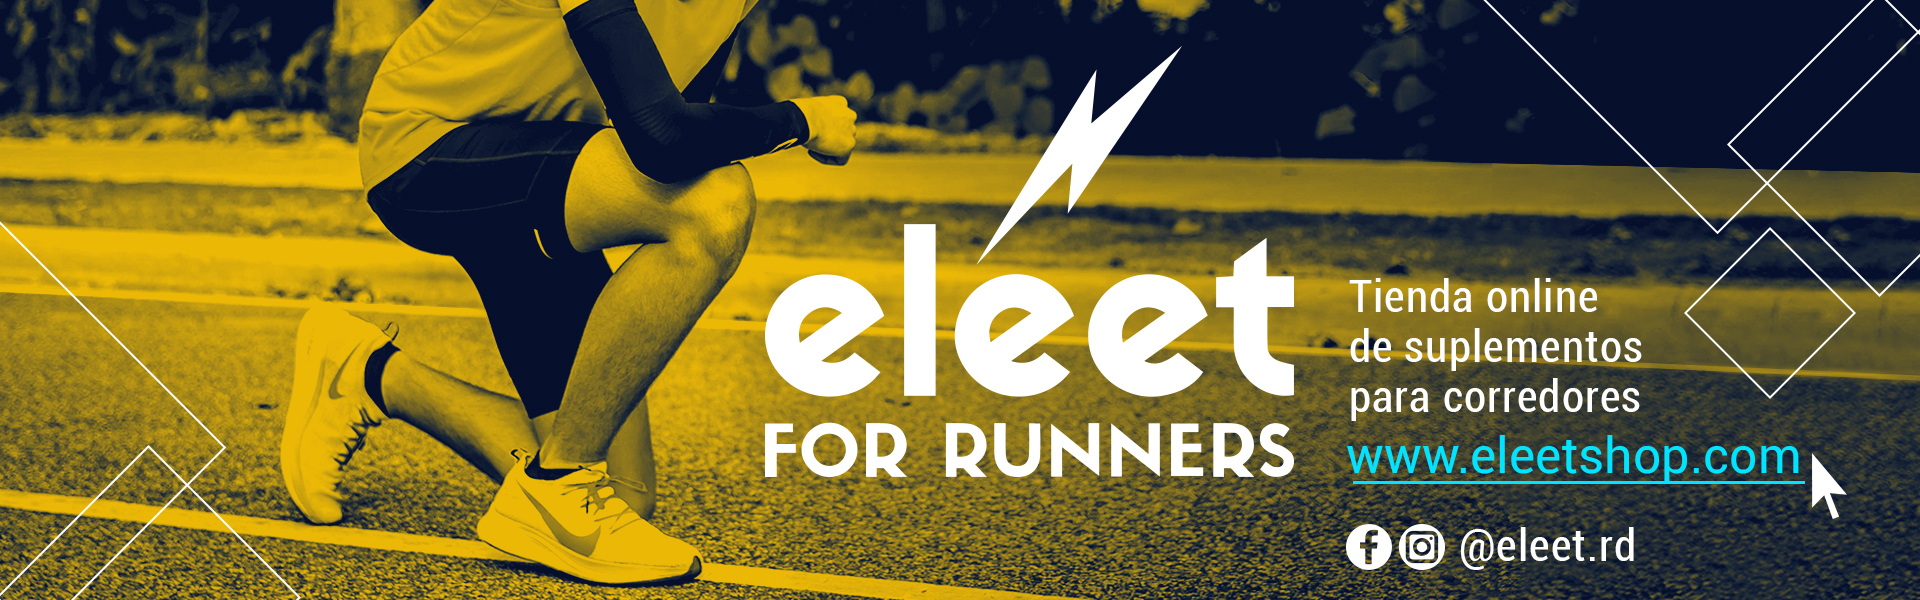 Eleet for Runner